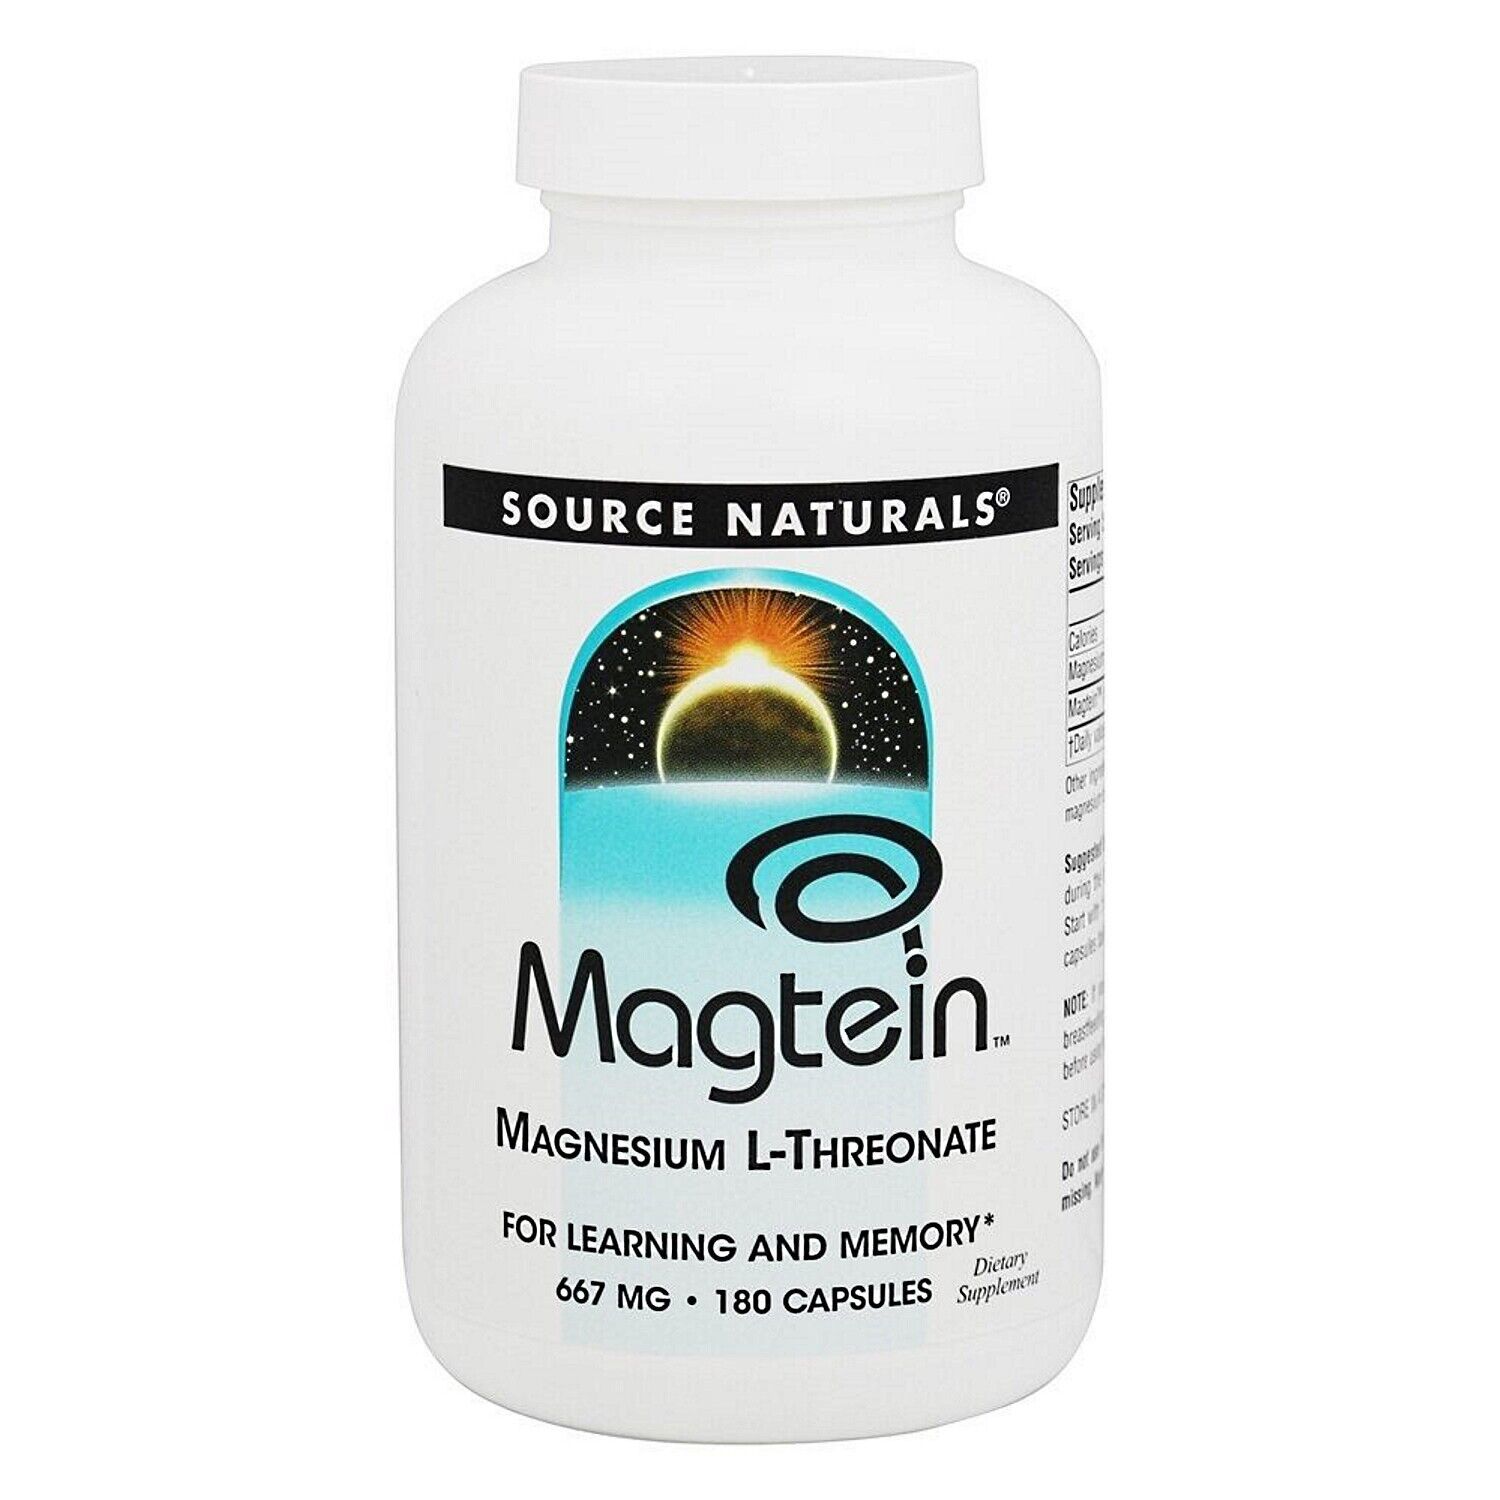 Source Naturals Magtein Magnesium L-Threonate, 180 Capsules - $60.19